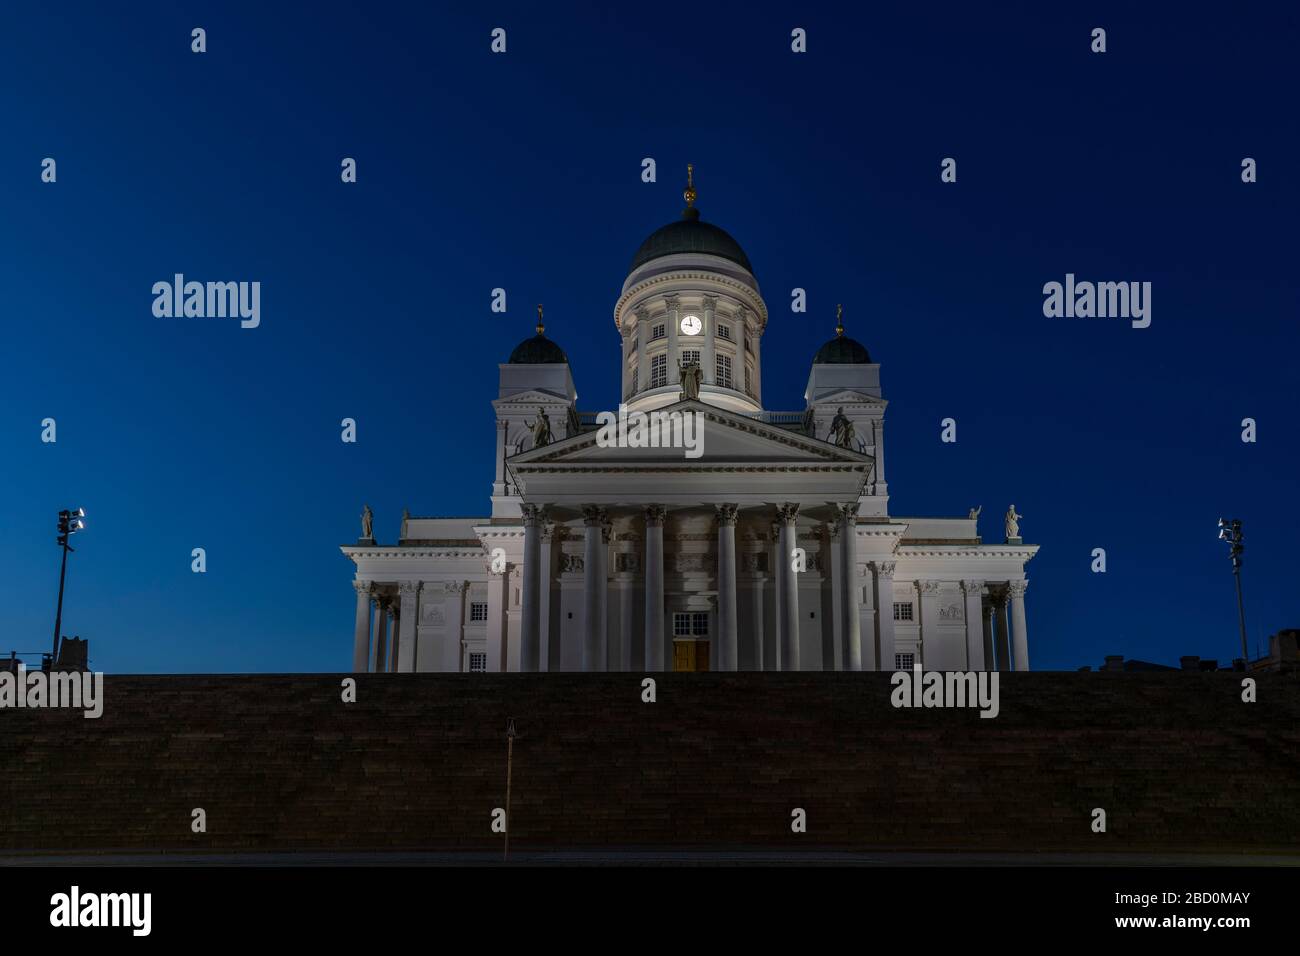 La cathédrale d'Helsinki est l'un des principaux sites de la capitale finlandaise. Normalement il est bondé par les touristes mais en raison de la pandémie de coronavirus maintenant vide. Banque D'Images